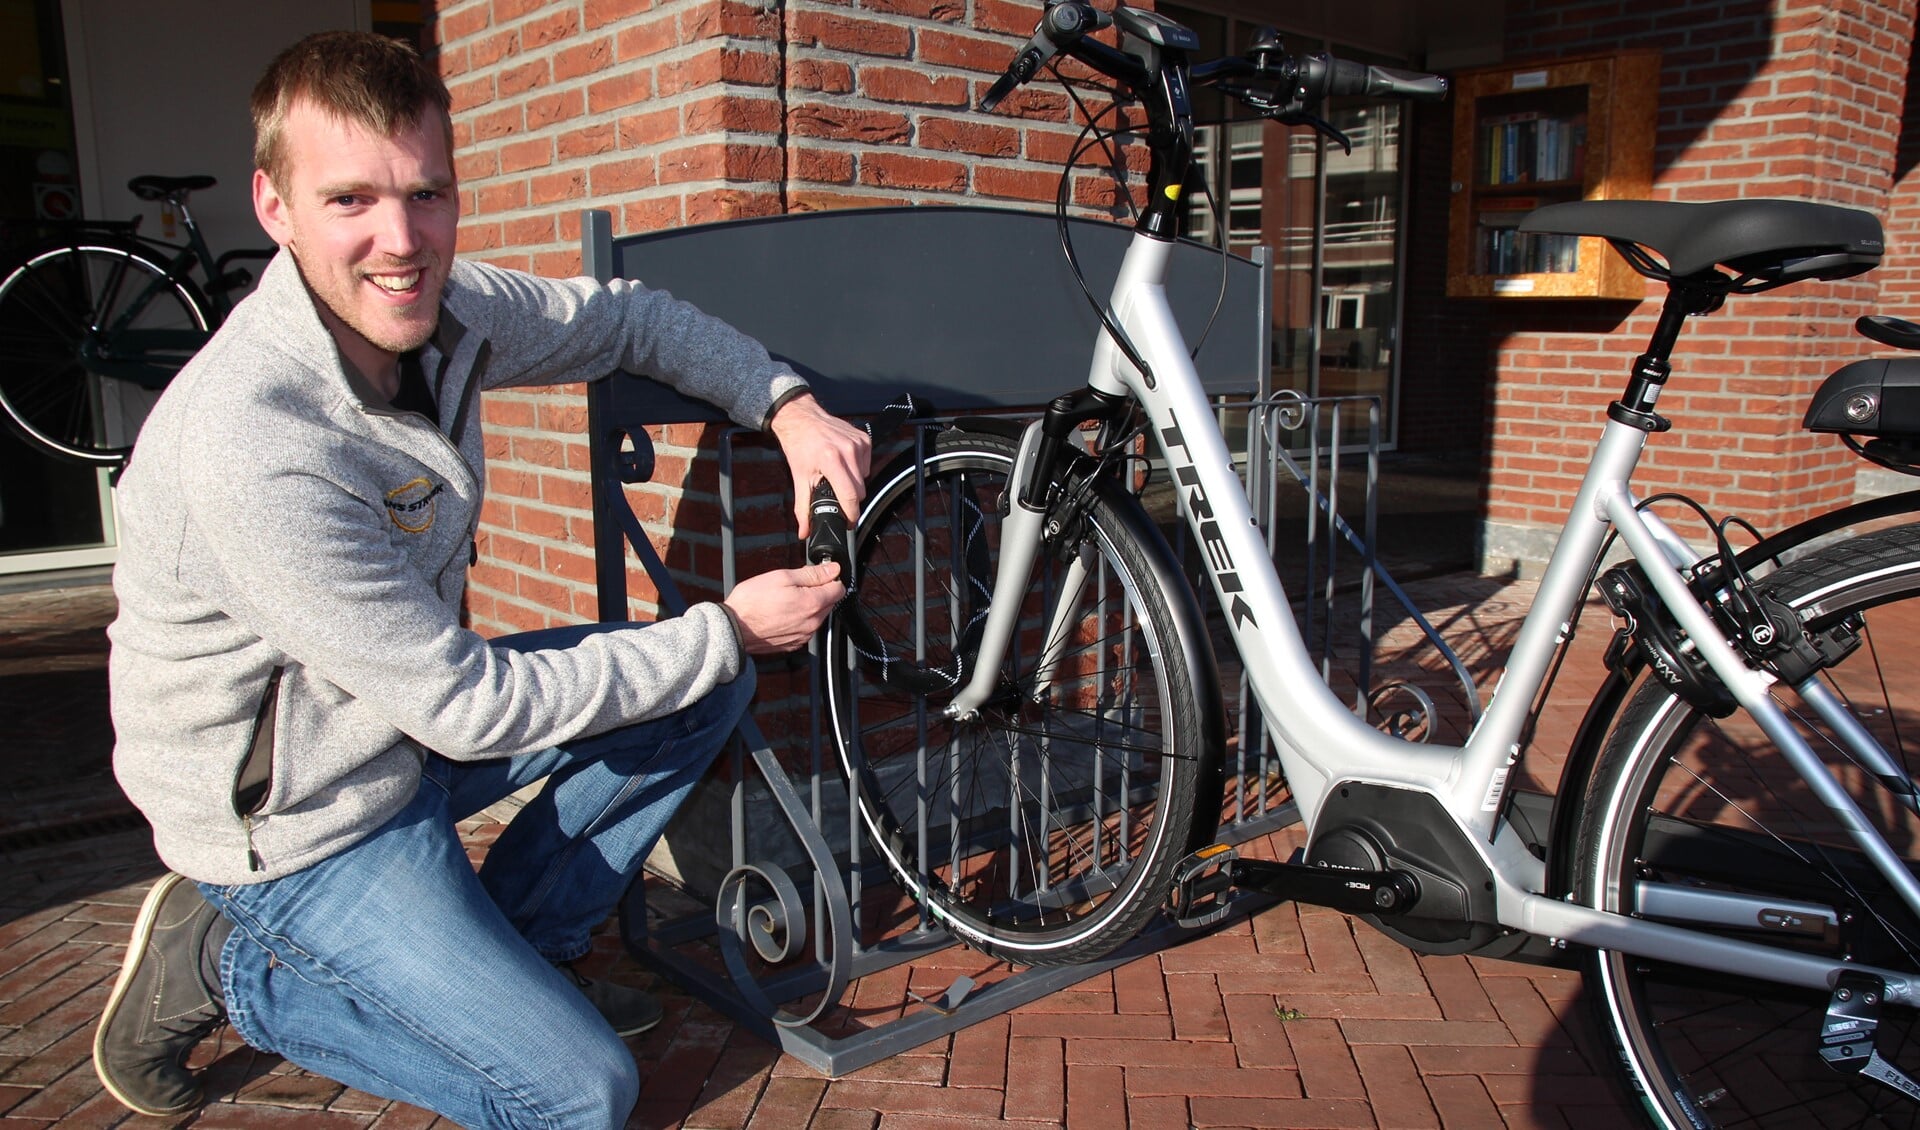 Het begint met goede sloten, zegt Jeroen Tijssen van Hans Struijk Fietsen. De Nootdorpse fietsenzaak stelt een mooi slot beschikbaar dat volgende week wordt verloot onder de deelnemers aan de graveeractie.